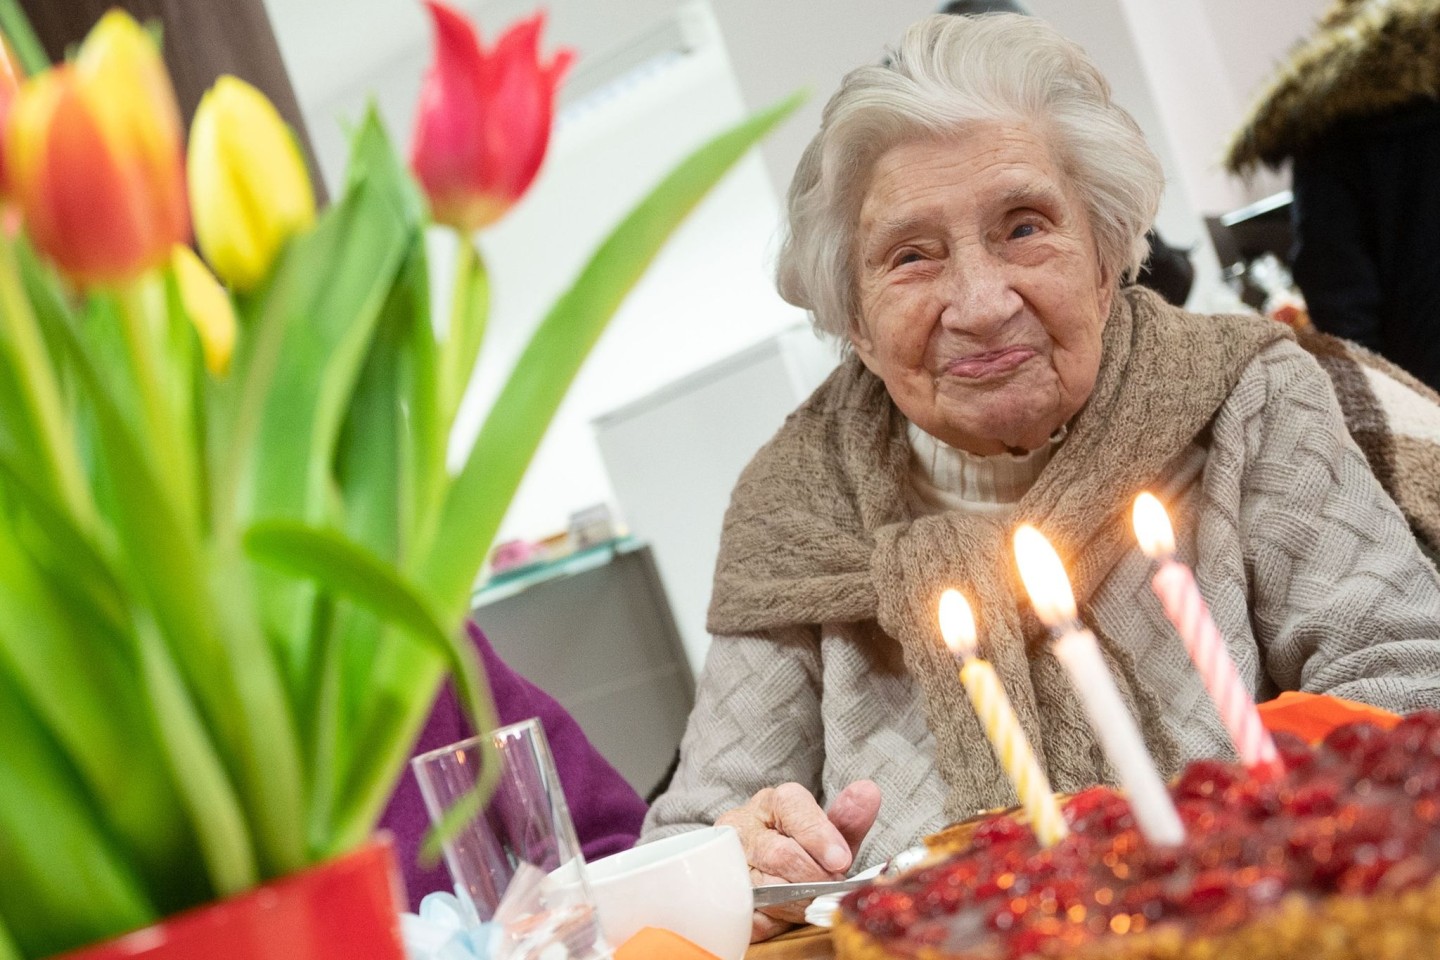 Anlass zum Feiern: Mina Hehn ist am Sonntag 109 Jahre alt geworden.